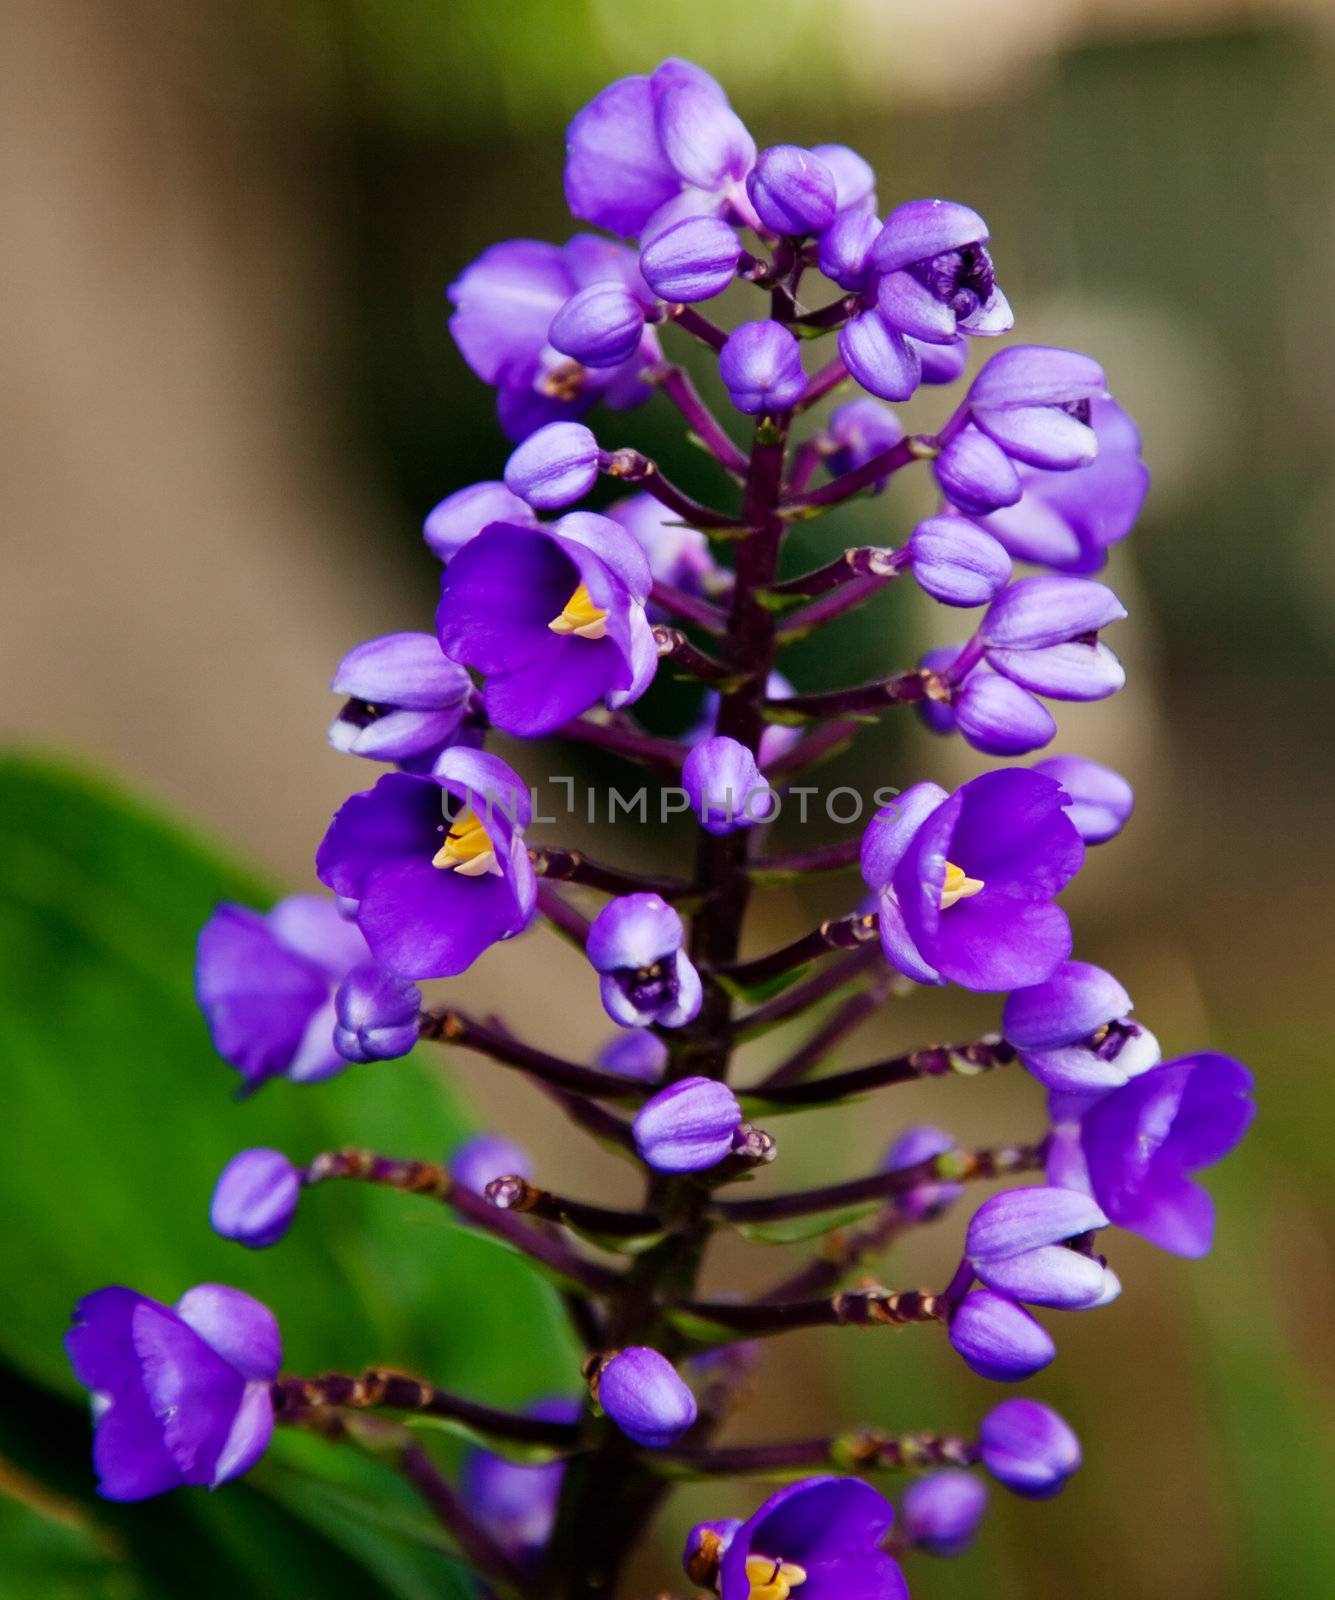 Purple cluster by monkeystock